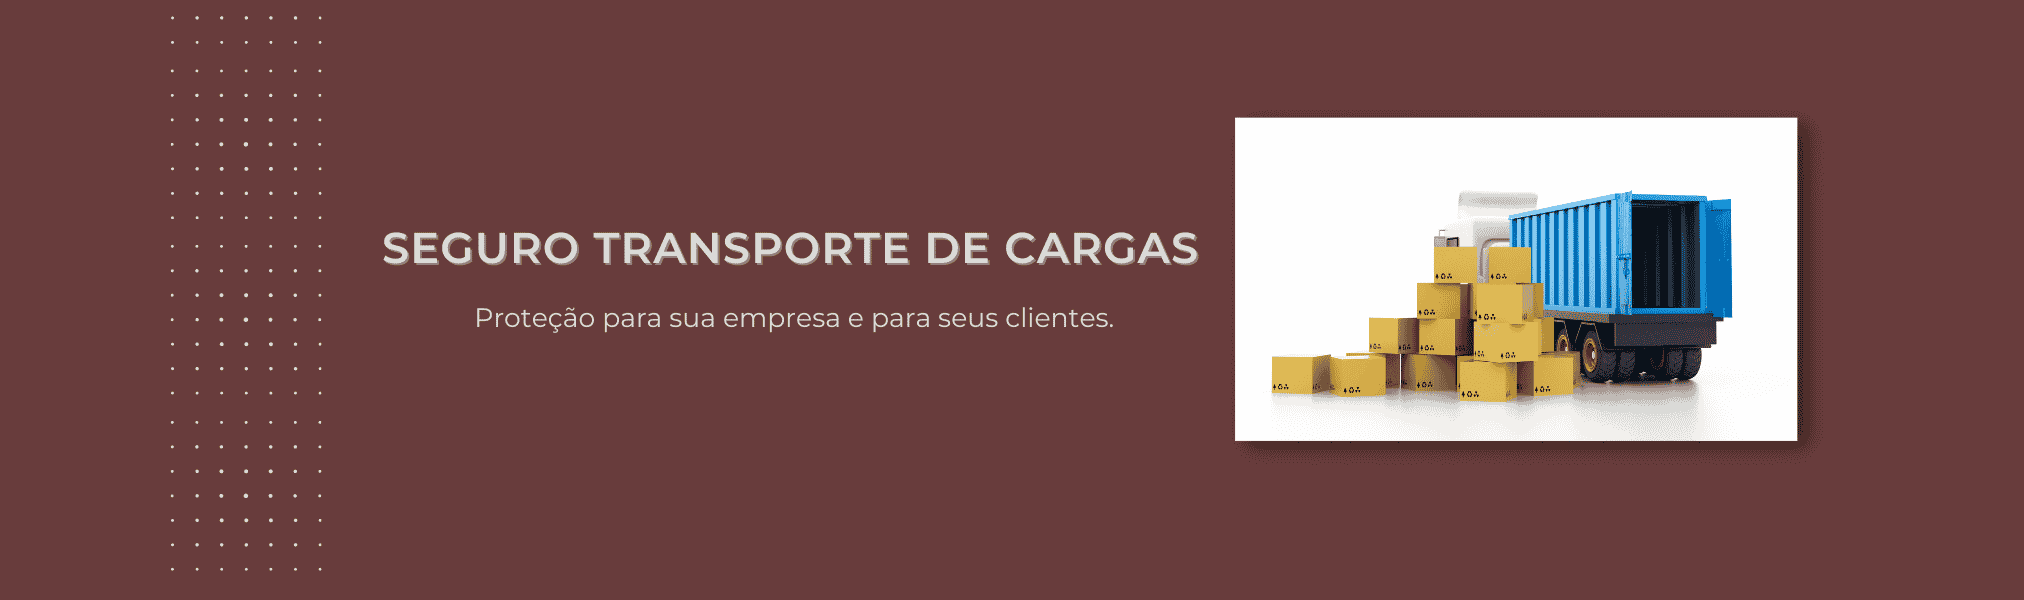 Banner Seguro Transporte de Cargas